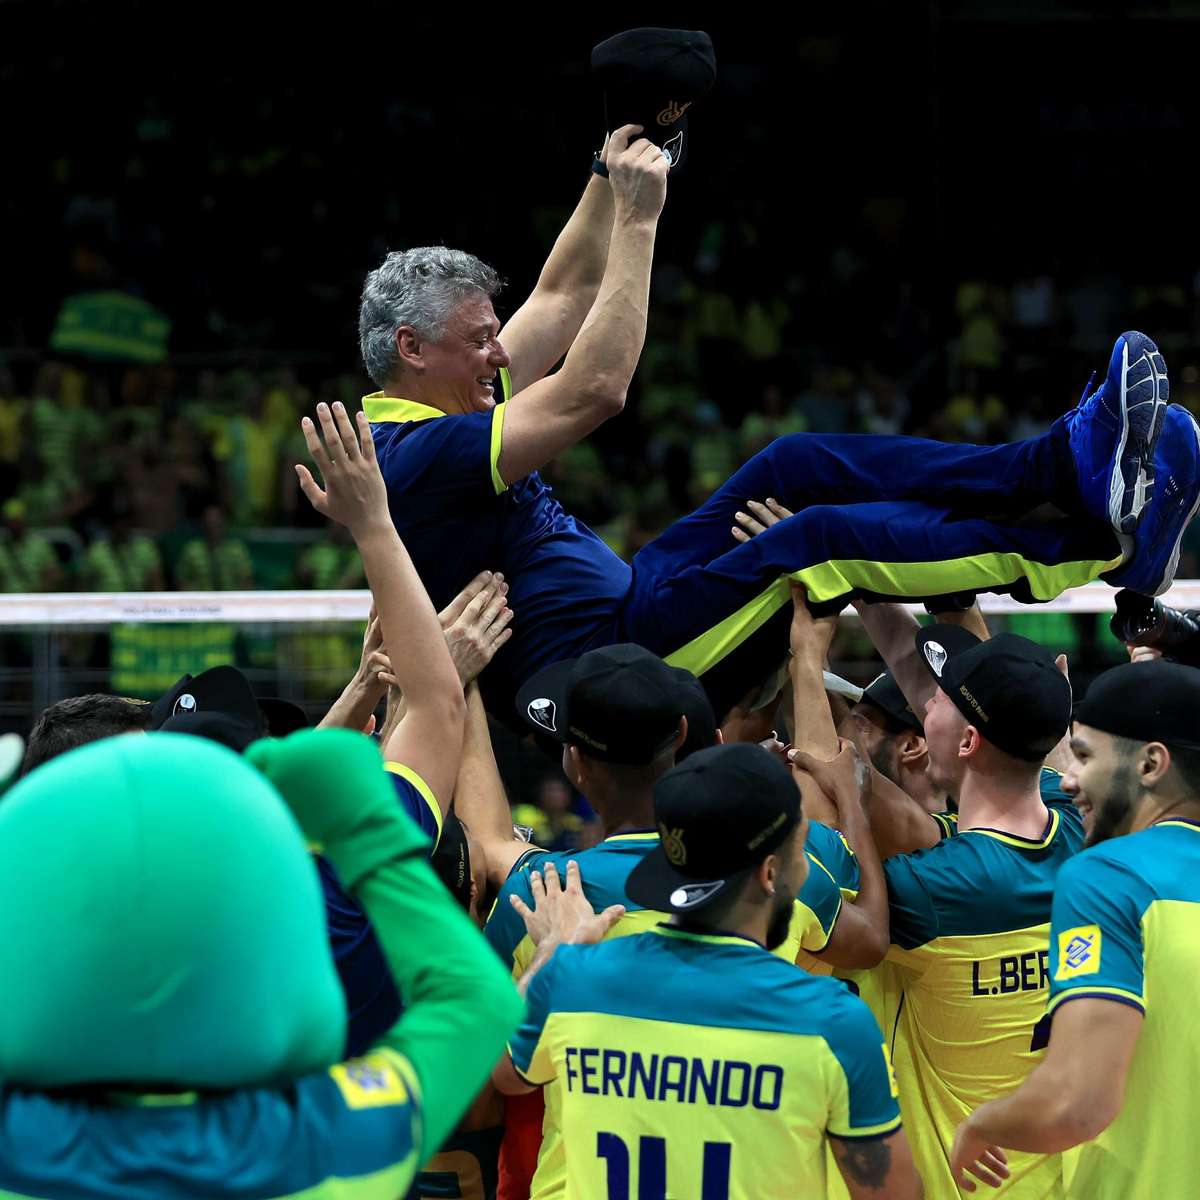 Vitória no tie-break leva seleção ense de vôlei à final de Brasileirão